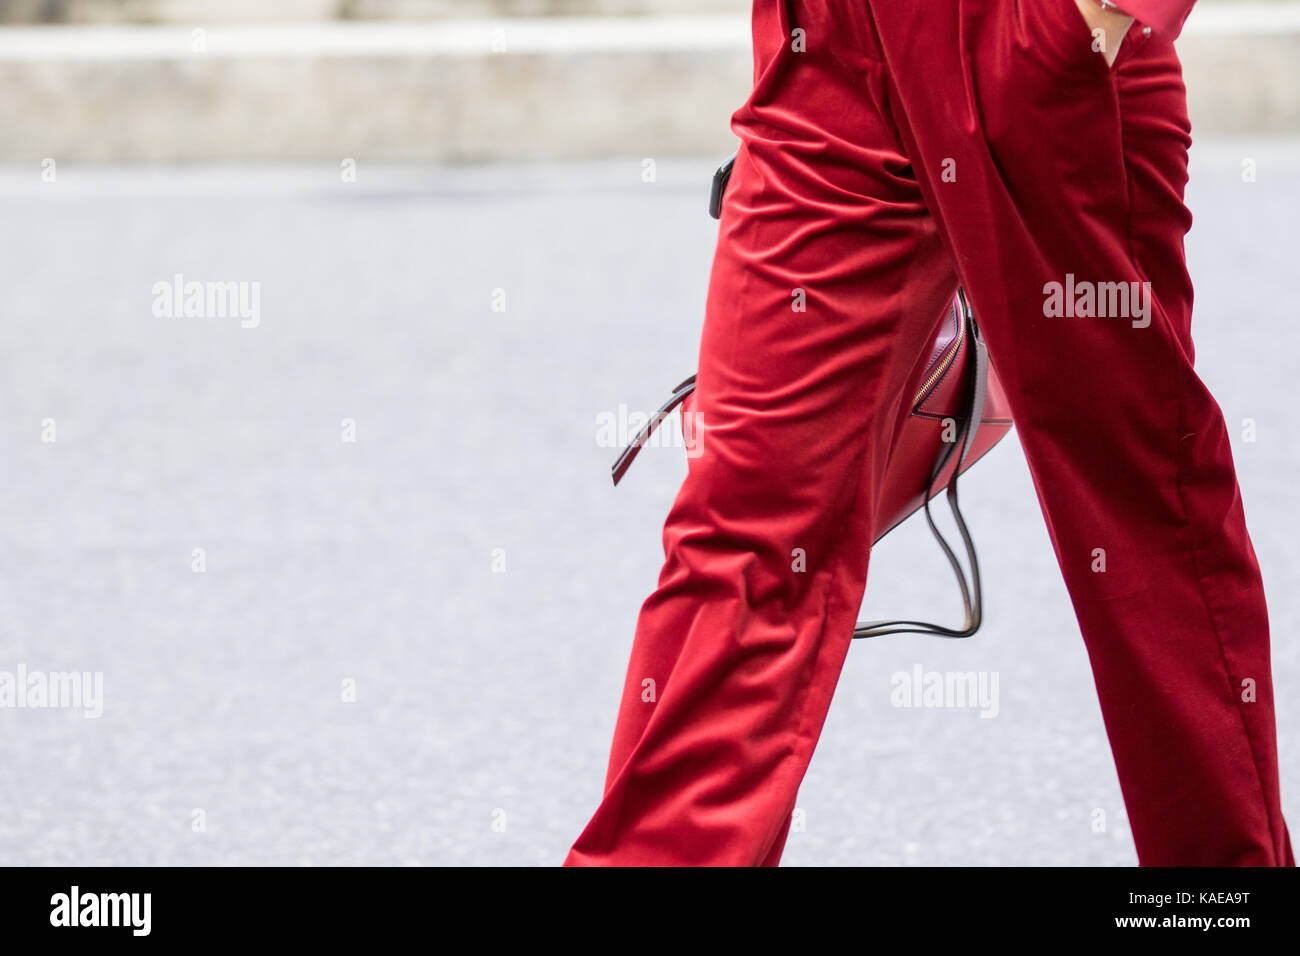 Milan, Italie - 22 septembre 2017 : modèle portant une paire de pantalon rouge et rouge sac à main armani pendant la parade, photographié dans la rue Banque D'Images